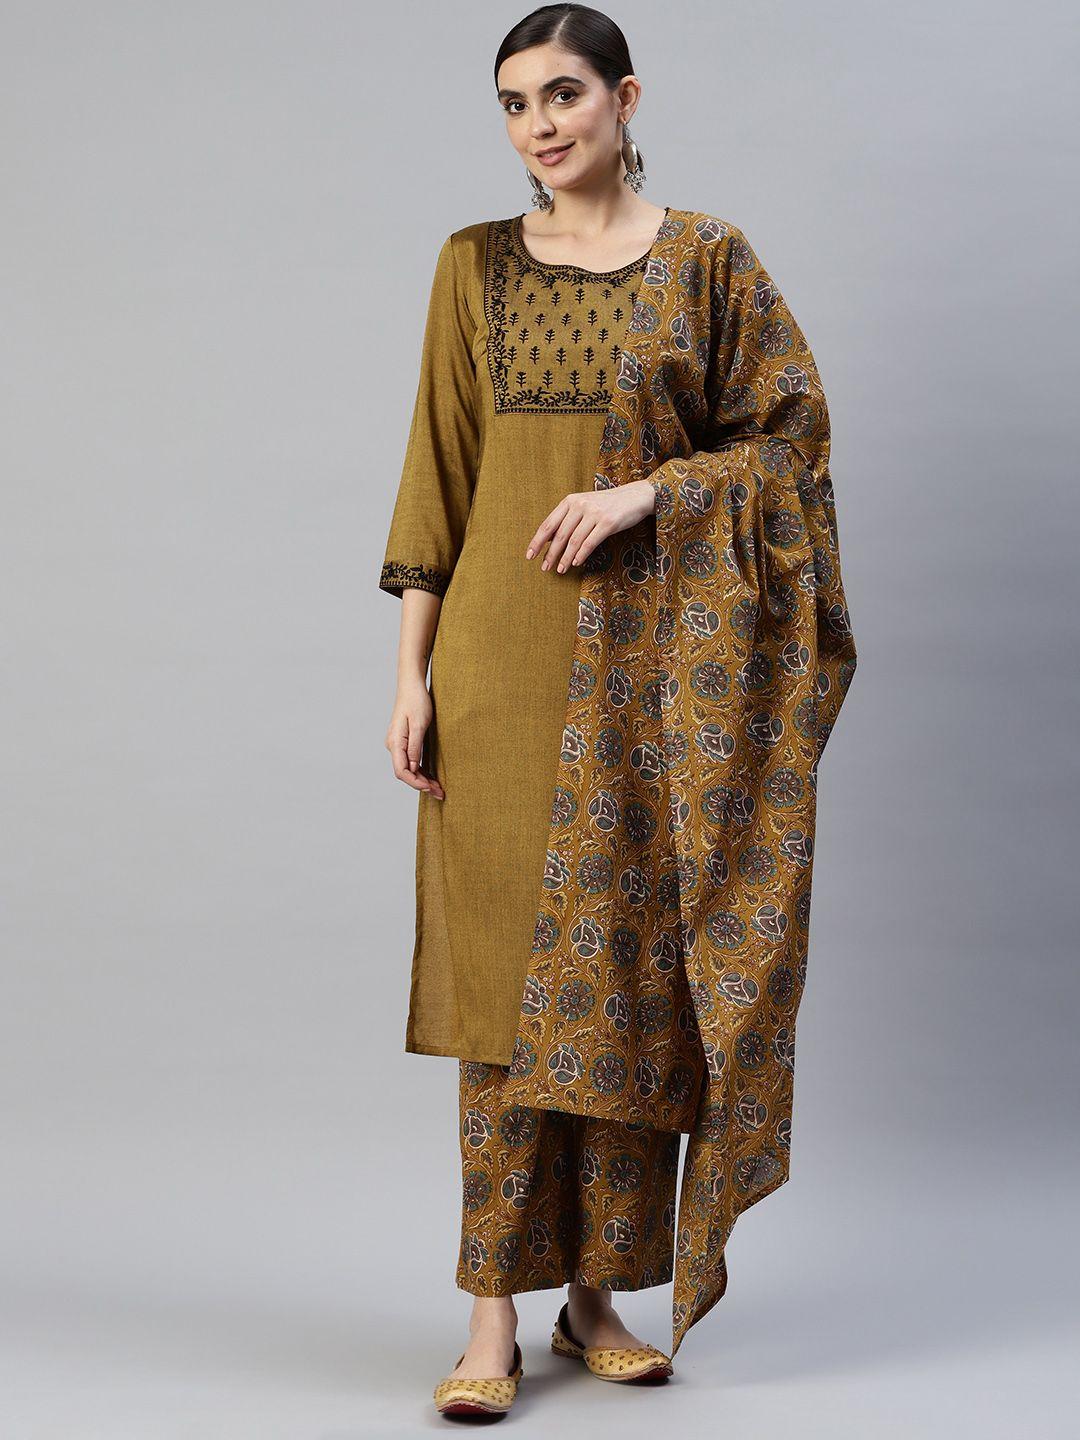 popnetic women mustard yellow ethnic motifs yoke design kurta with palazzos & with dupatta